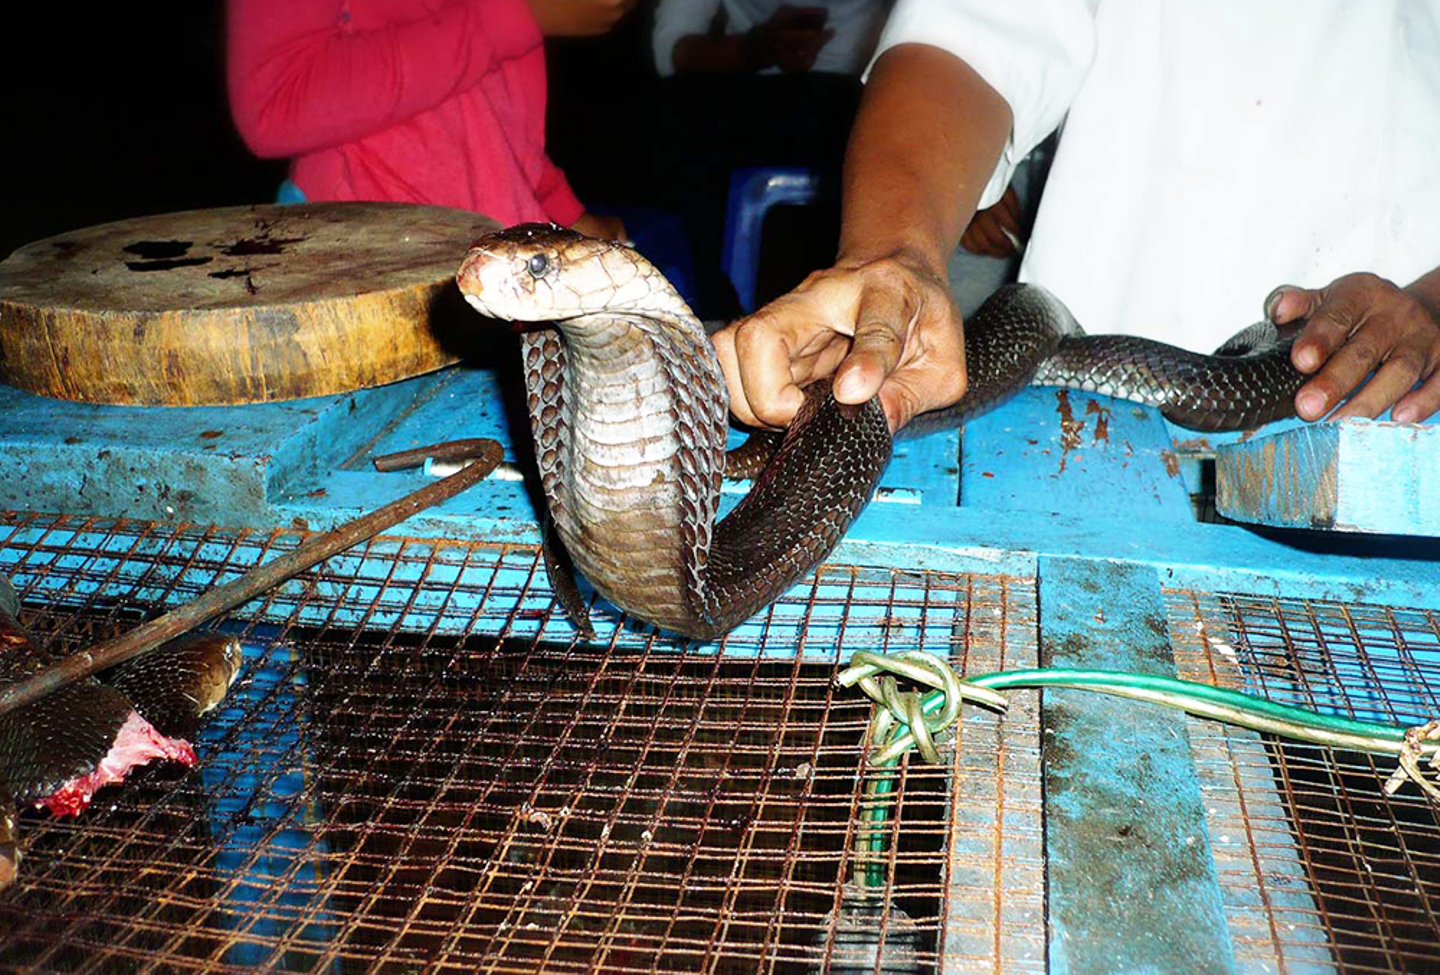 змеи вьетнама описание